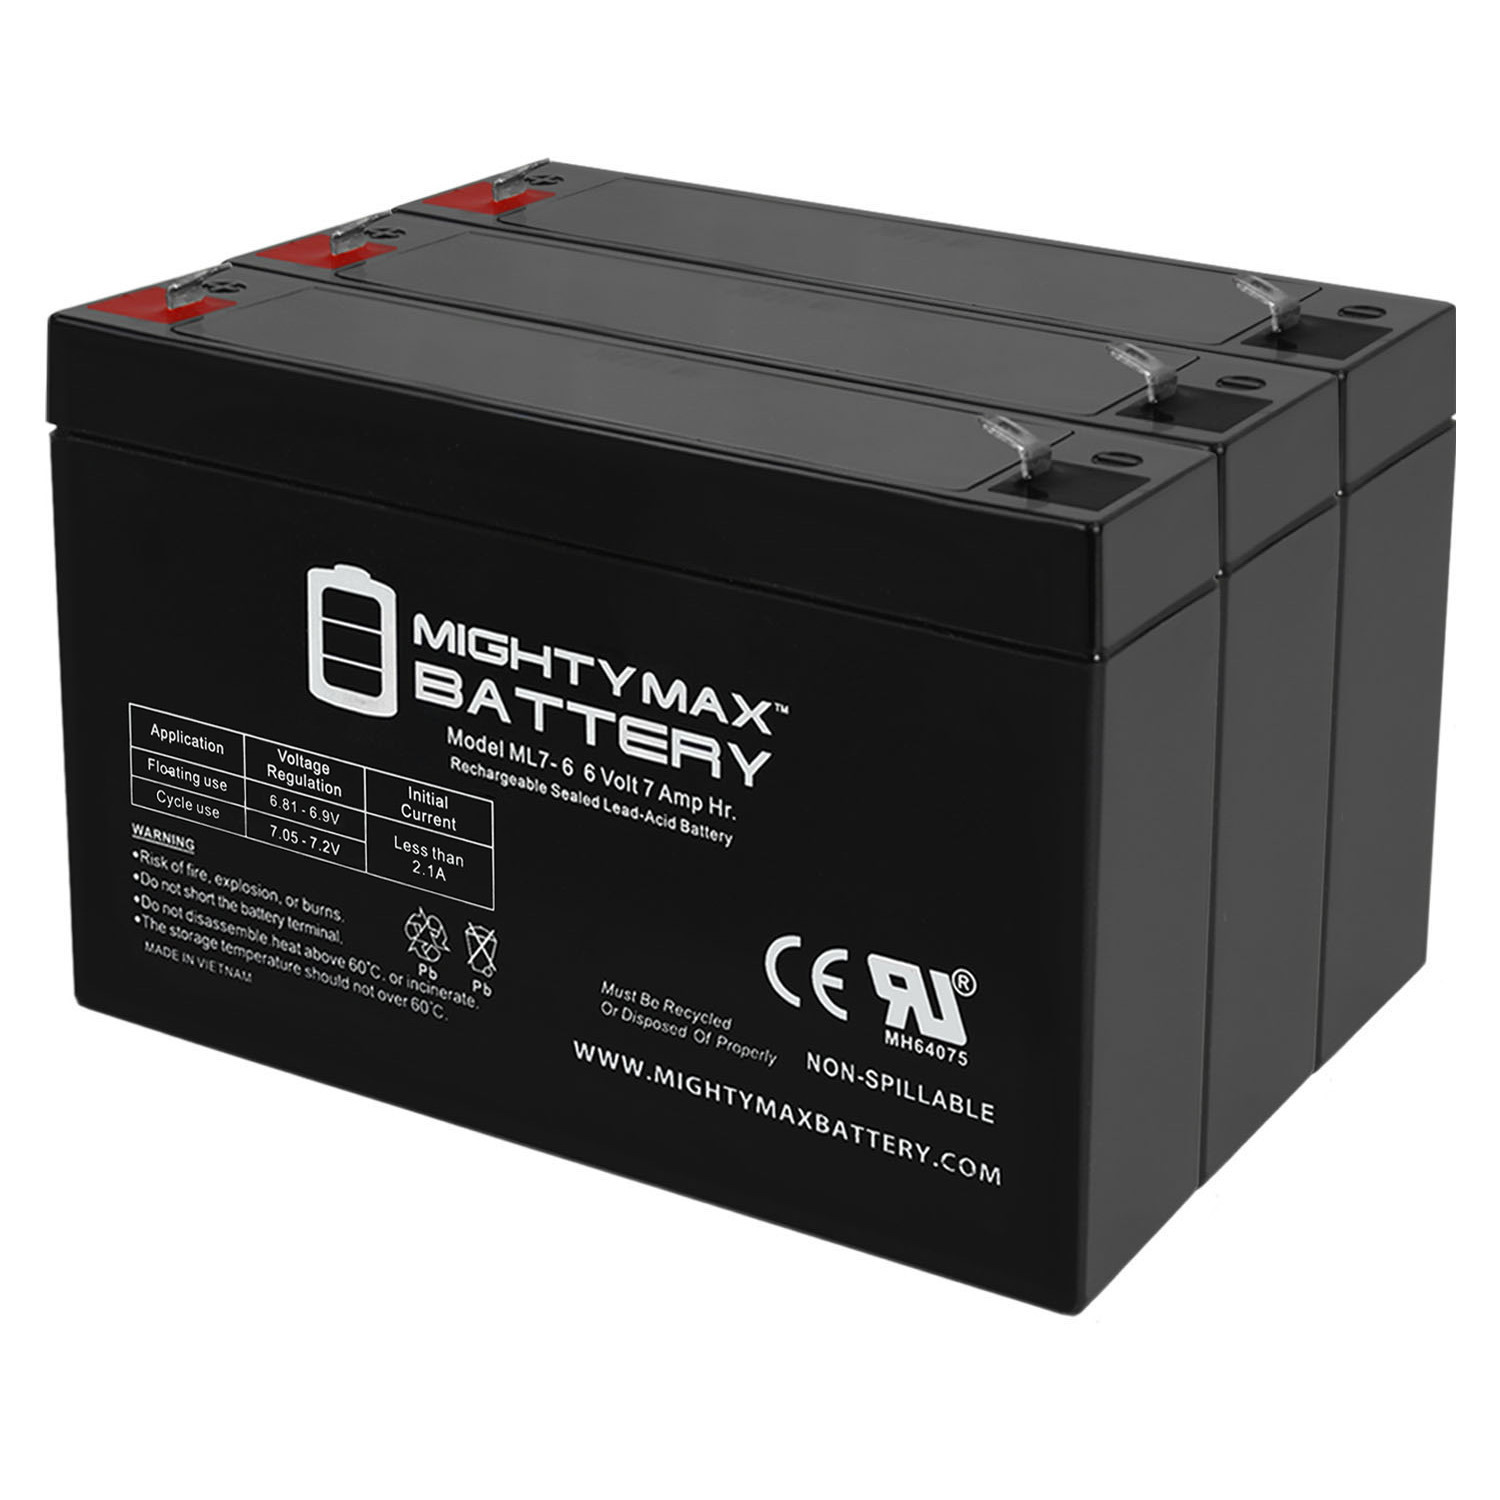 6V 7Ah SLA Replacement Battery for Alaris Medical Gemini PC-1-Model - 3 Pack